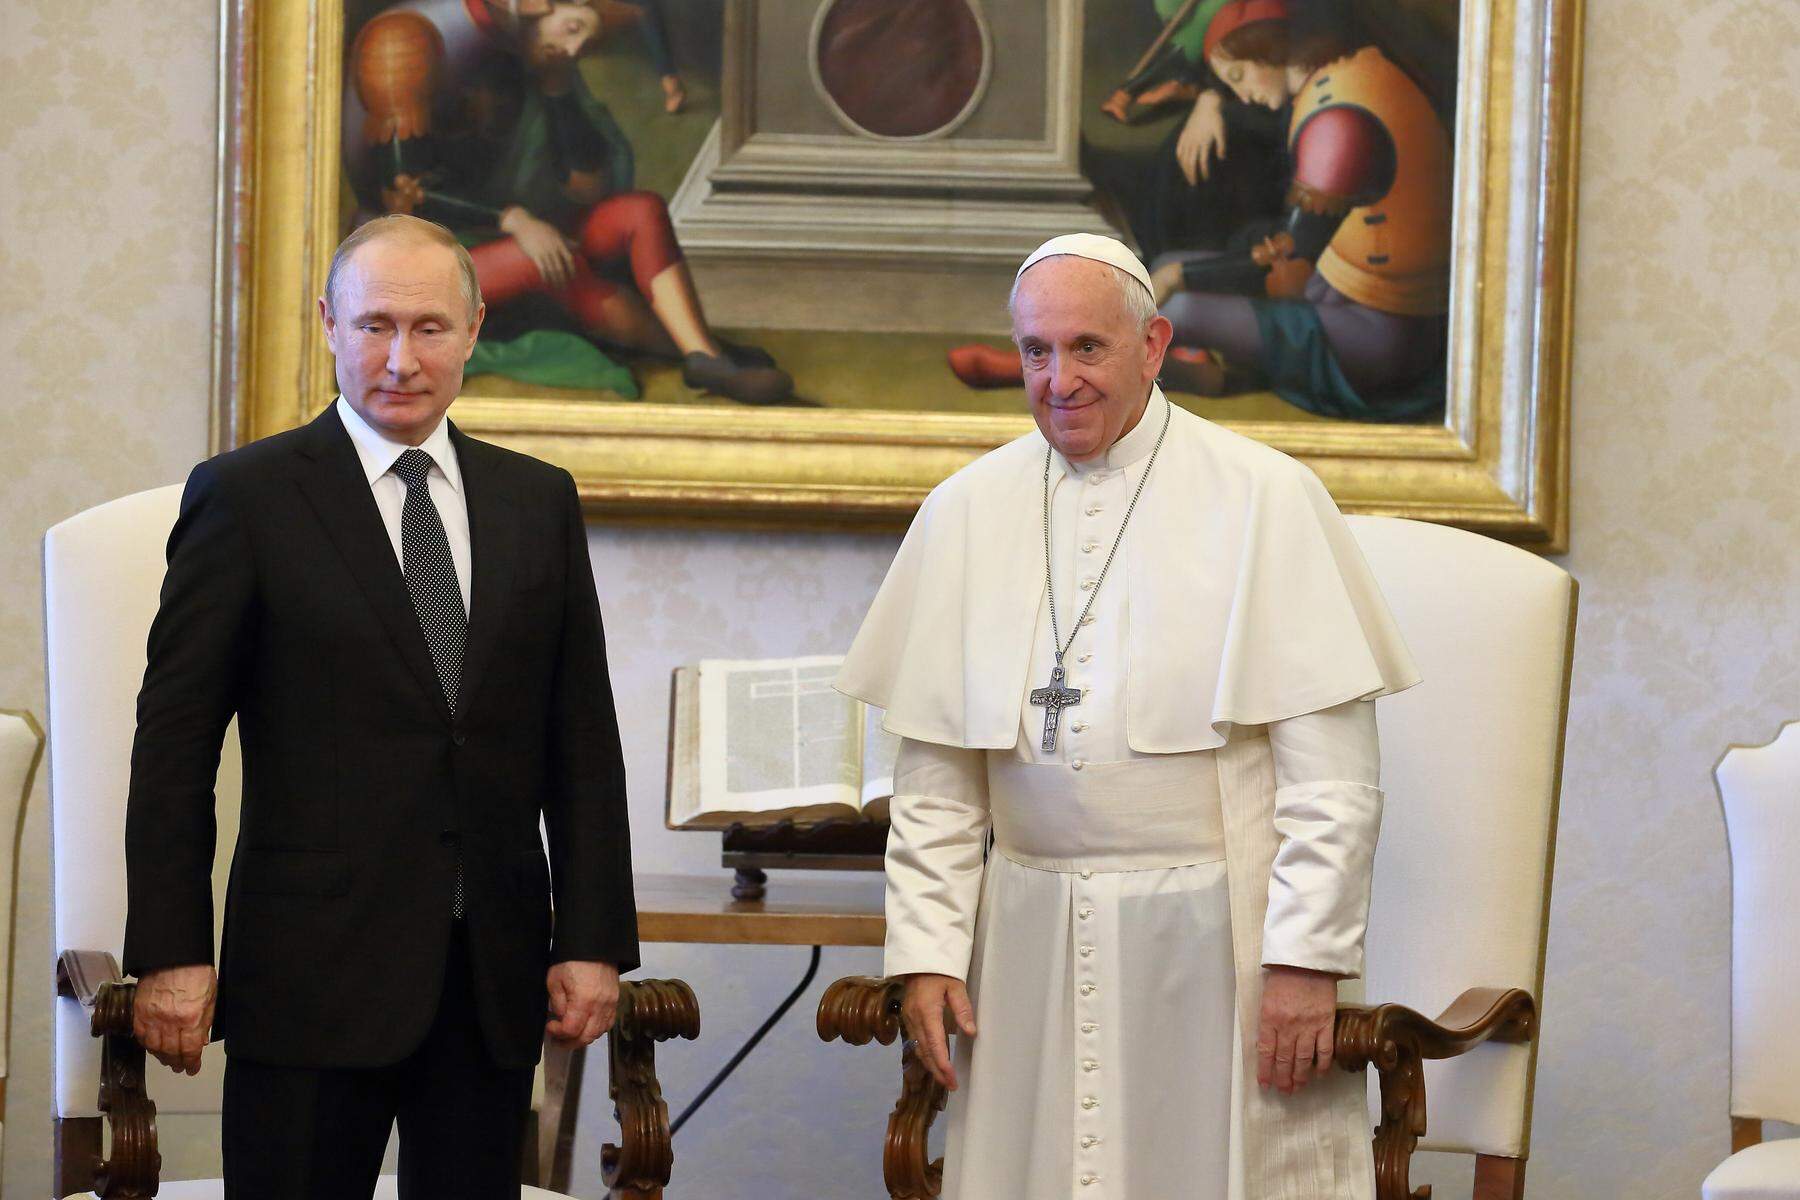 Glückwünsche zum Jubiläum: Putin lobt Papst in persönlicher Botschaft als „ehrlichen Verfechter des Friedens“